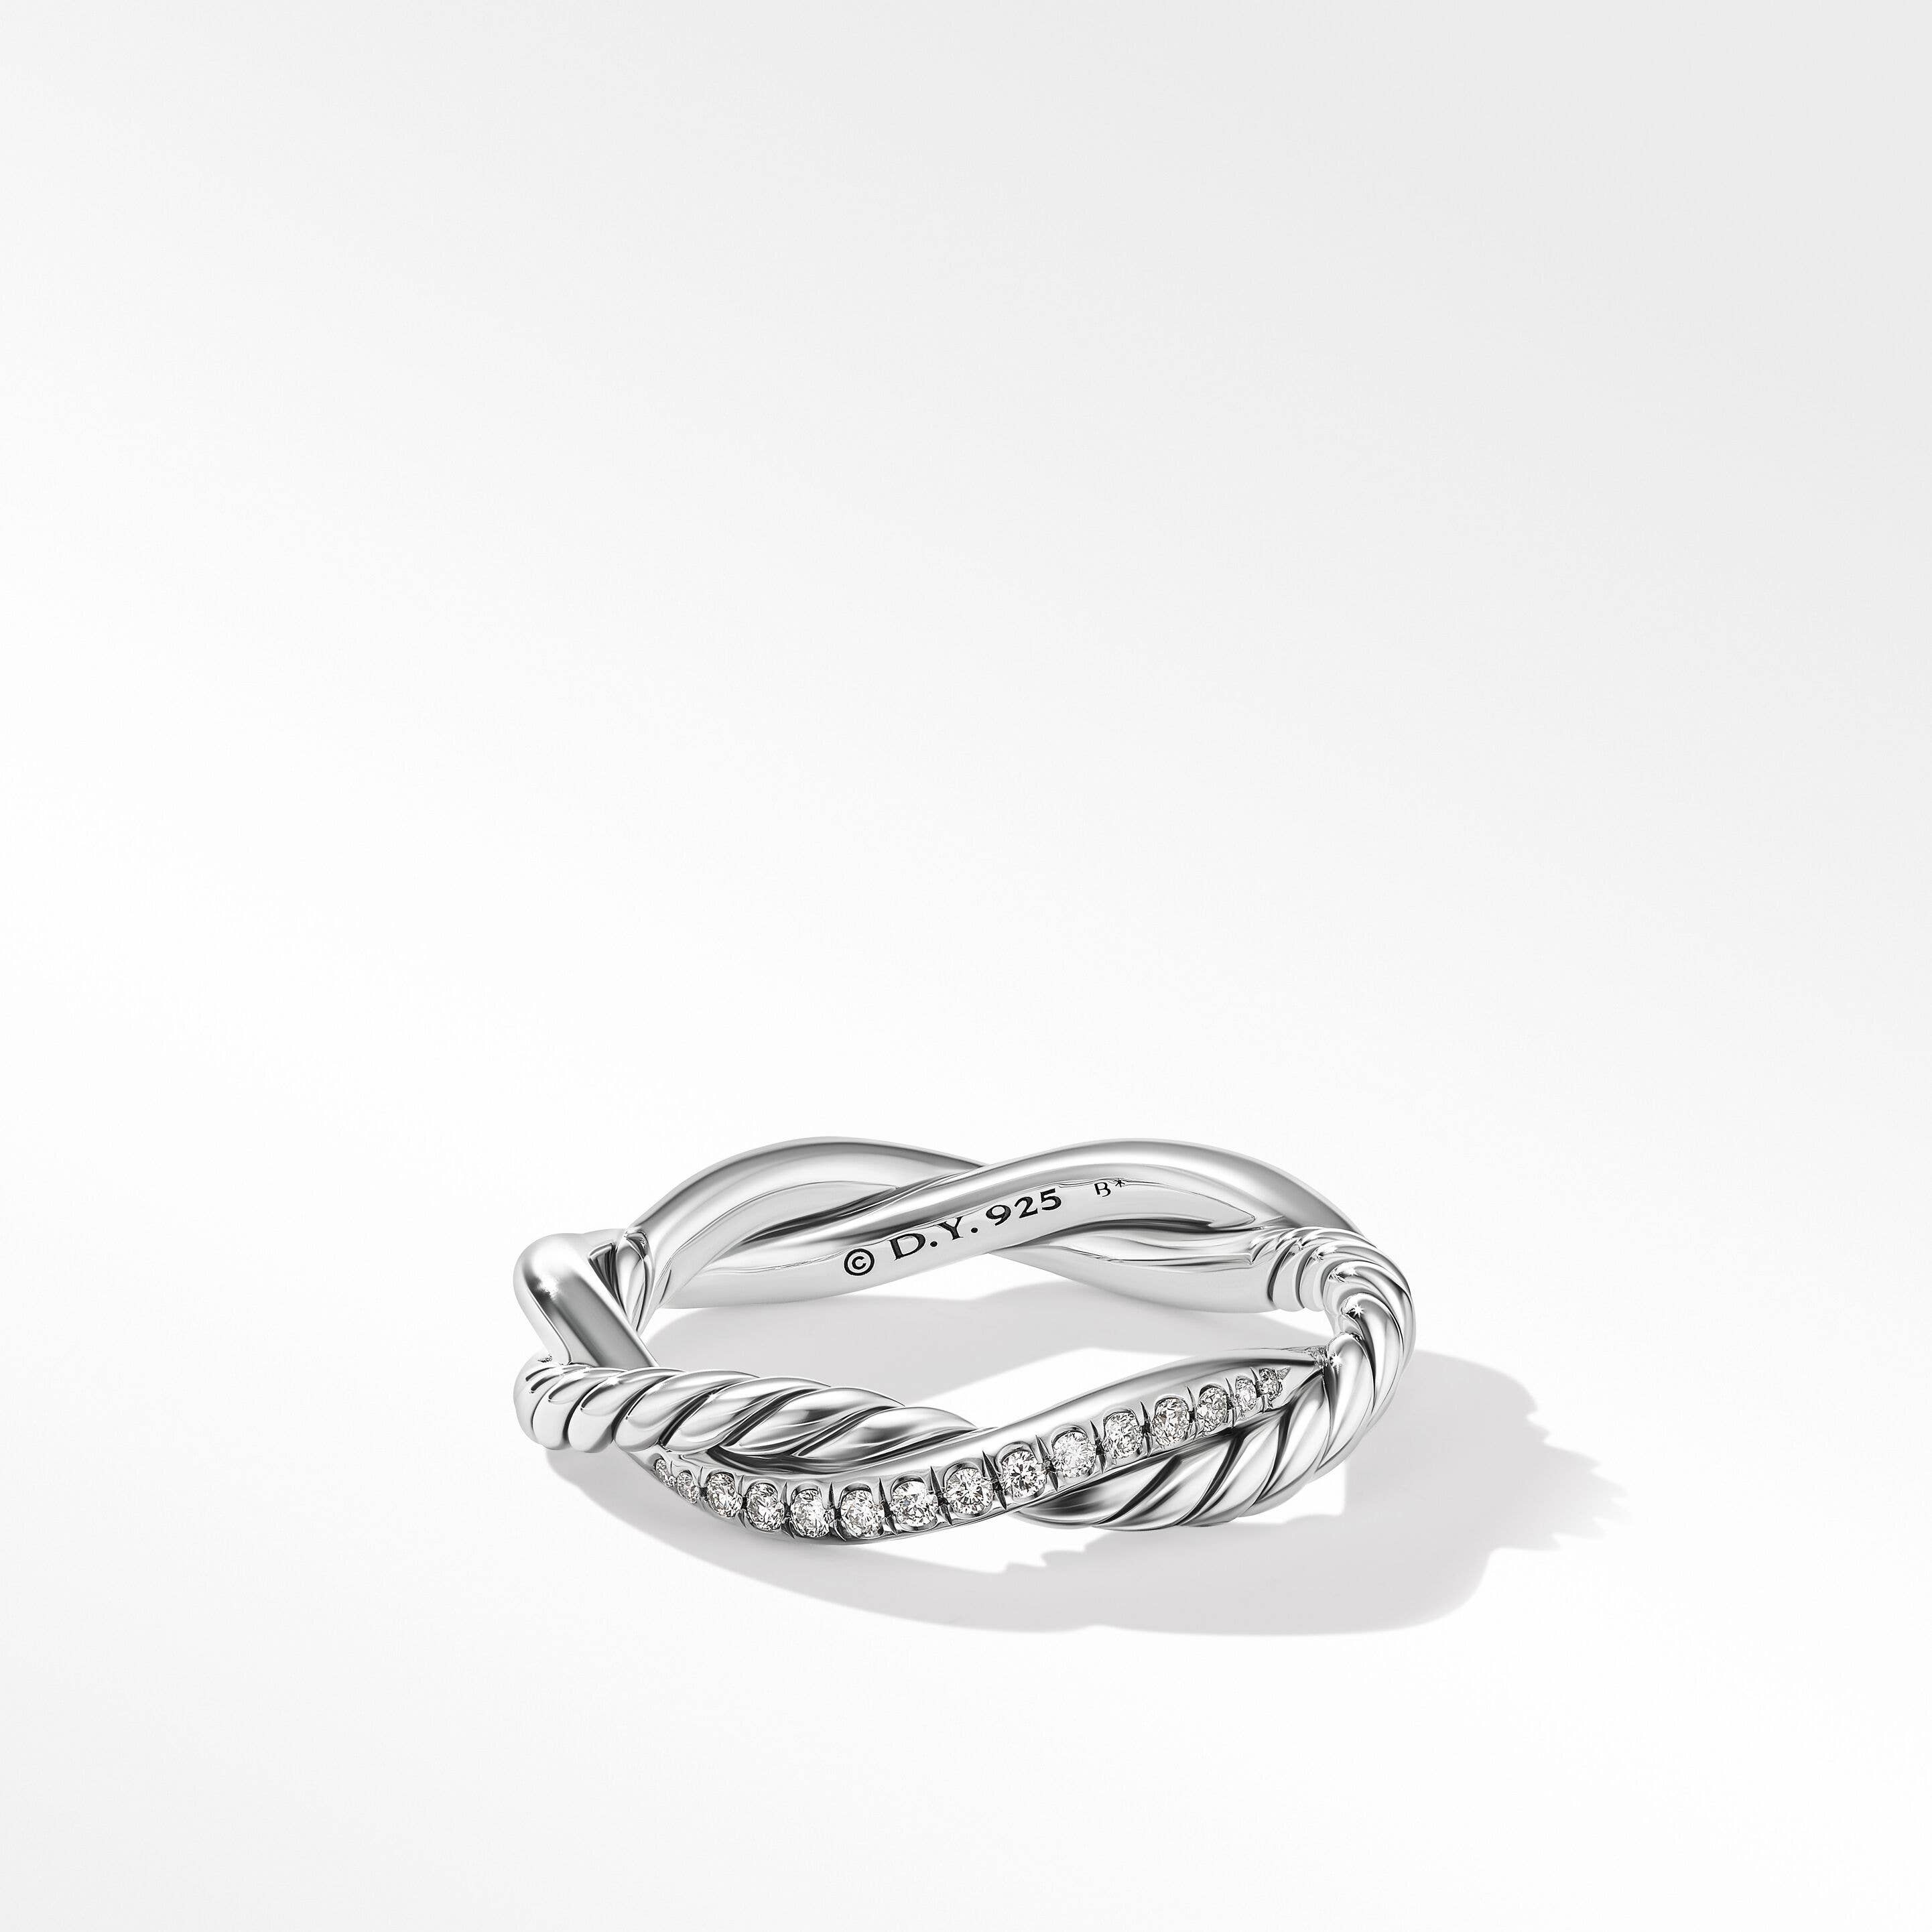 Petite Infinity Band Ring with Pavé Diamonds